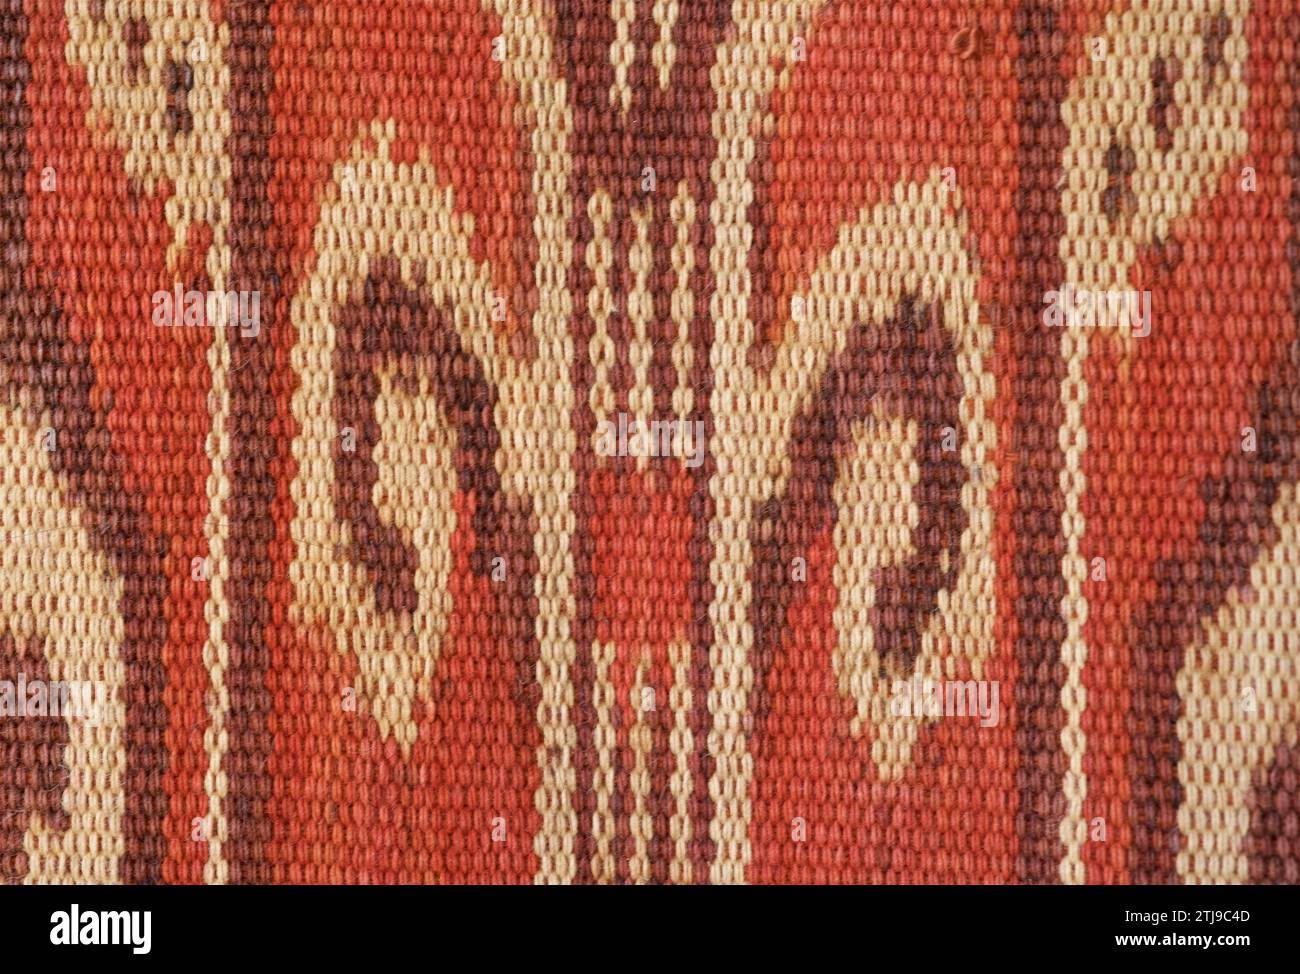 Detail des Kettikats mit Pua Kumbu-Motiven, die Laubwedel darstellen. Ein IBAN, Dayak, zeremonielles Textil aus Borneo. Die IBAN leben sowohl in Sarawak, Malaysia als auch in Kalimantan, Indonesien. Eigenschaft Freigegeben. Stockfoto